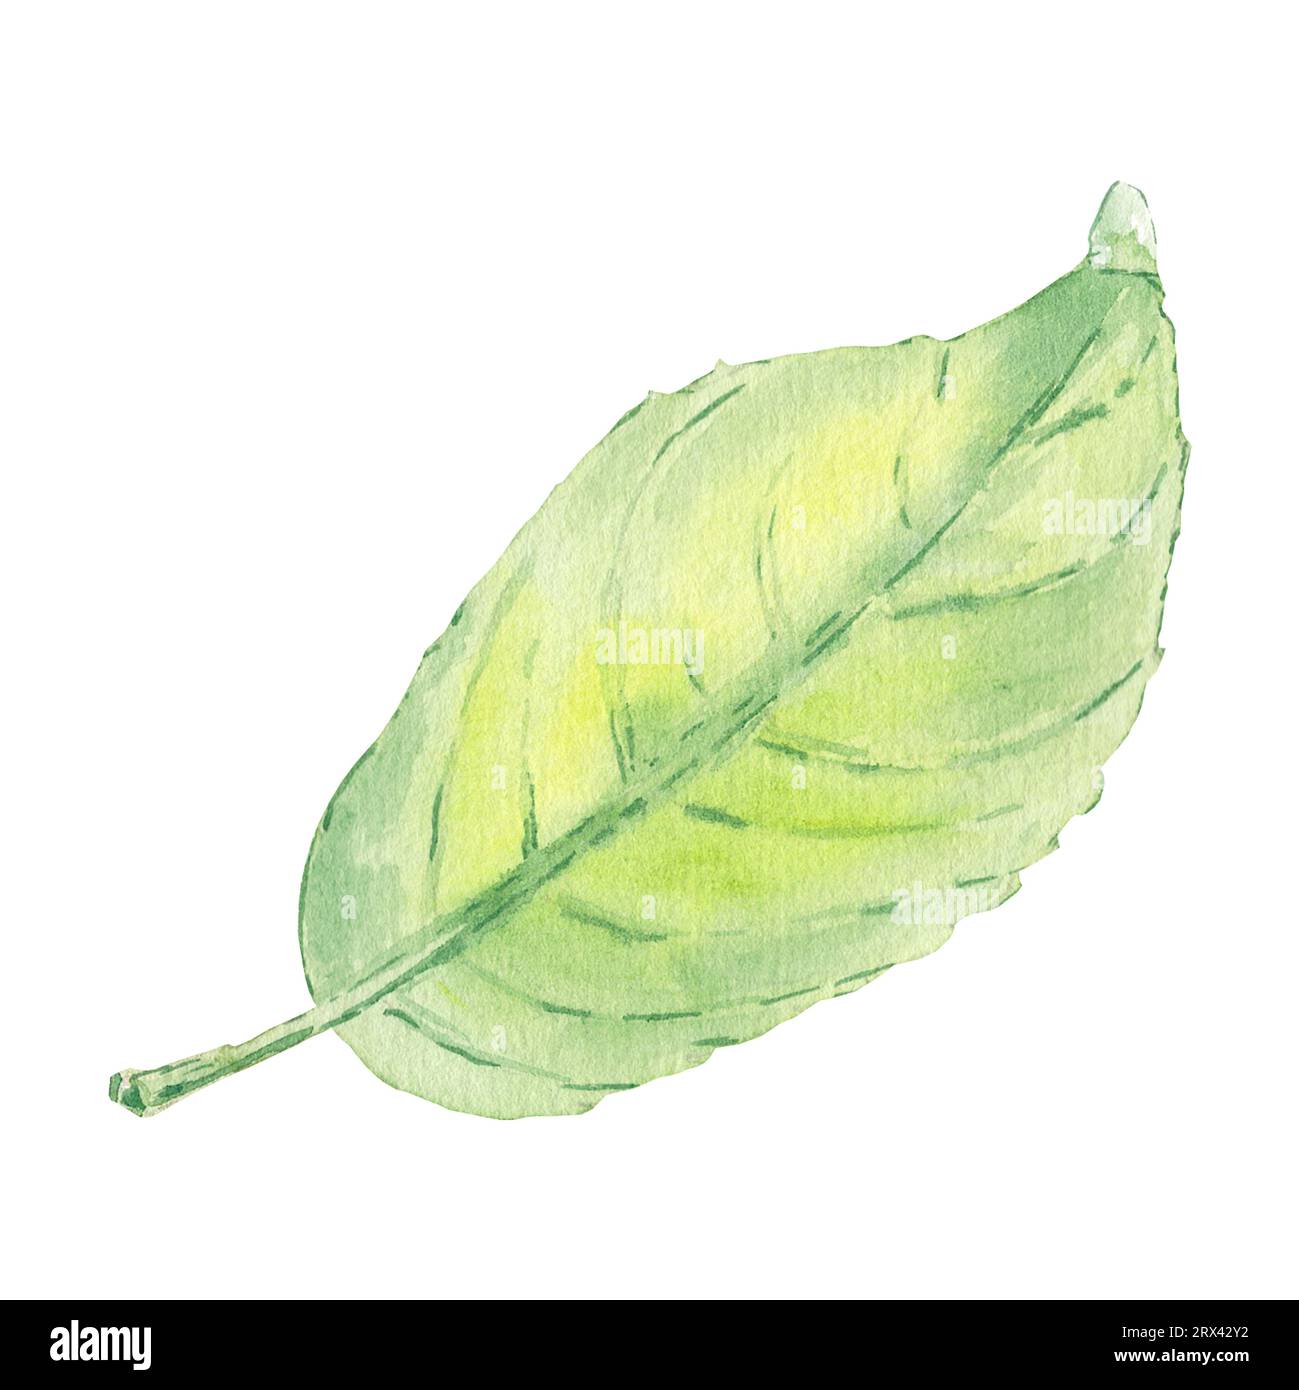 Aquarellapfel hinterlässt isolierte Illustration auf weißem Hintergrund. Handspitzes Bild im botanischen Stil für Logo, Menü, Poster, Muster. Kunstdesign Stockfoto